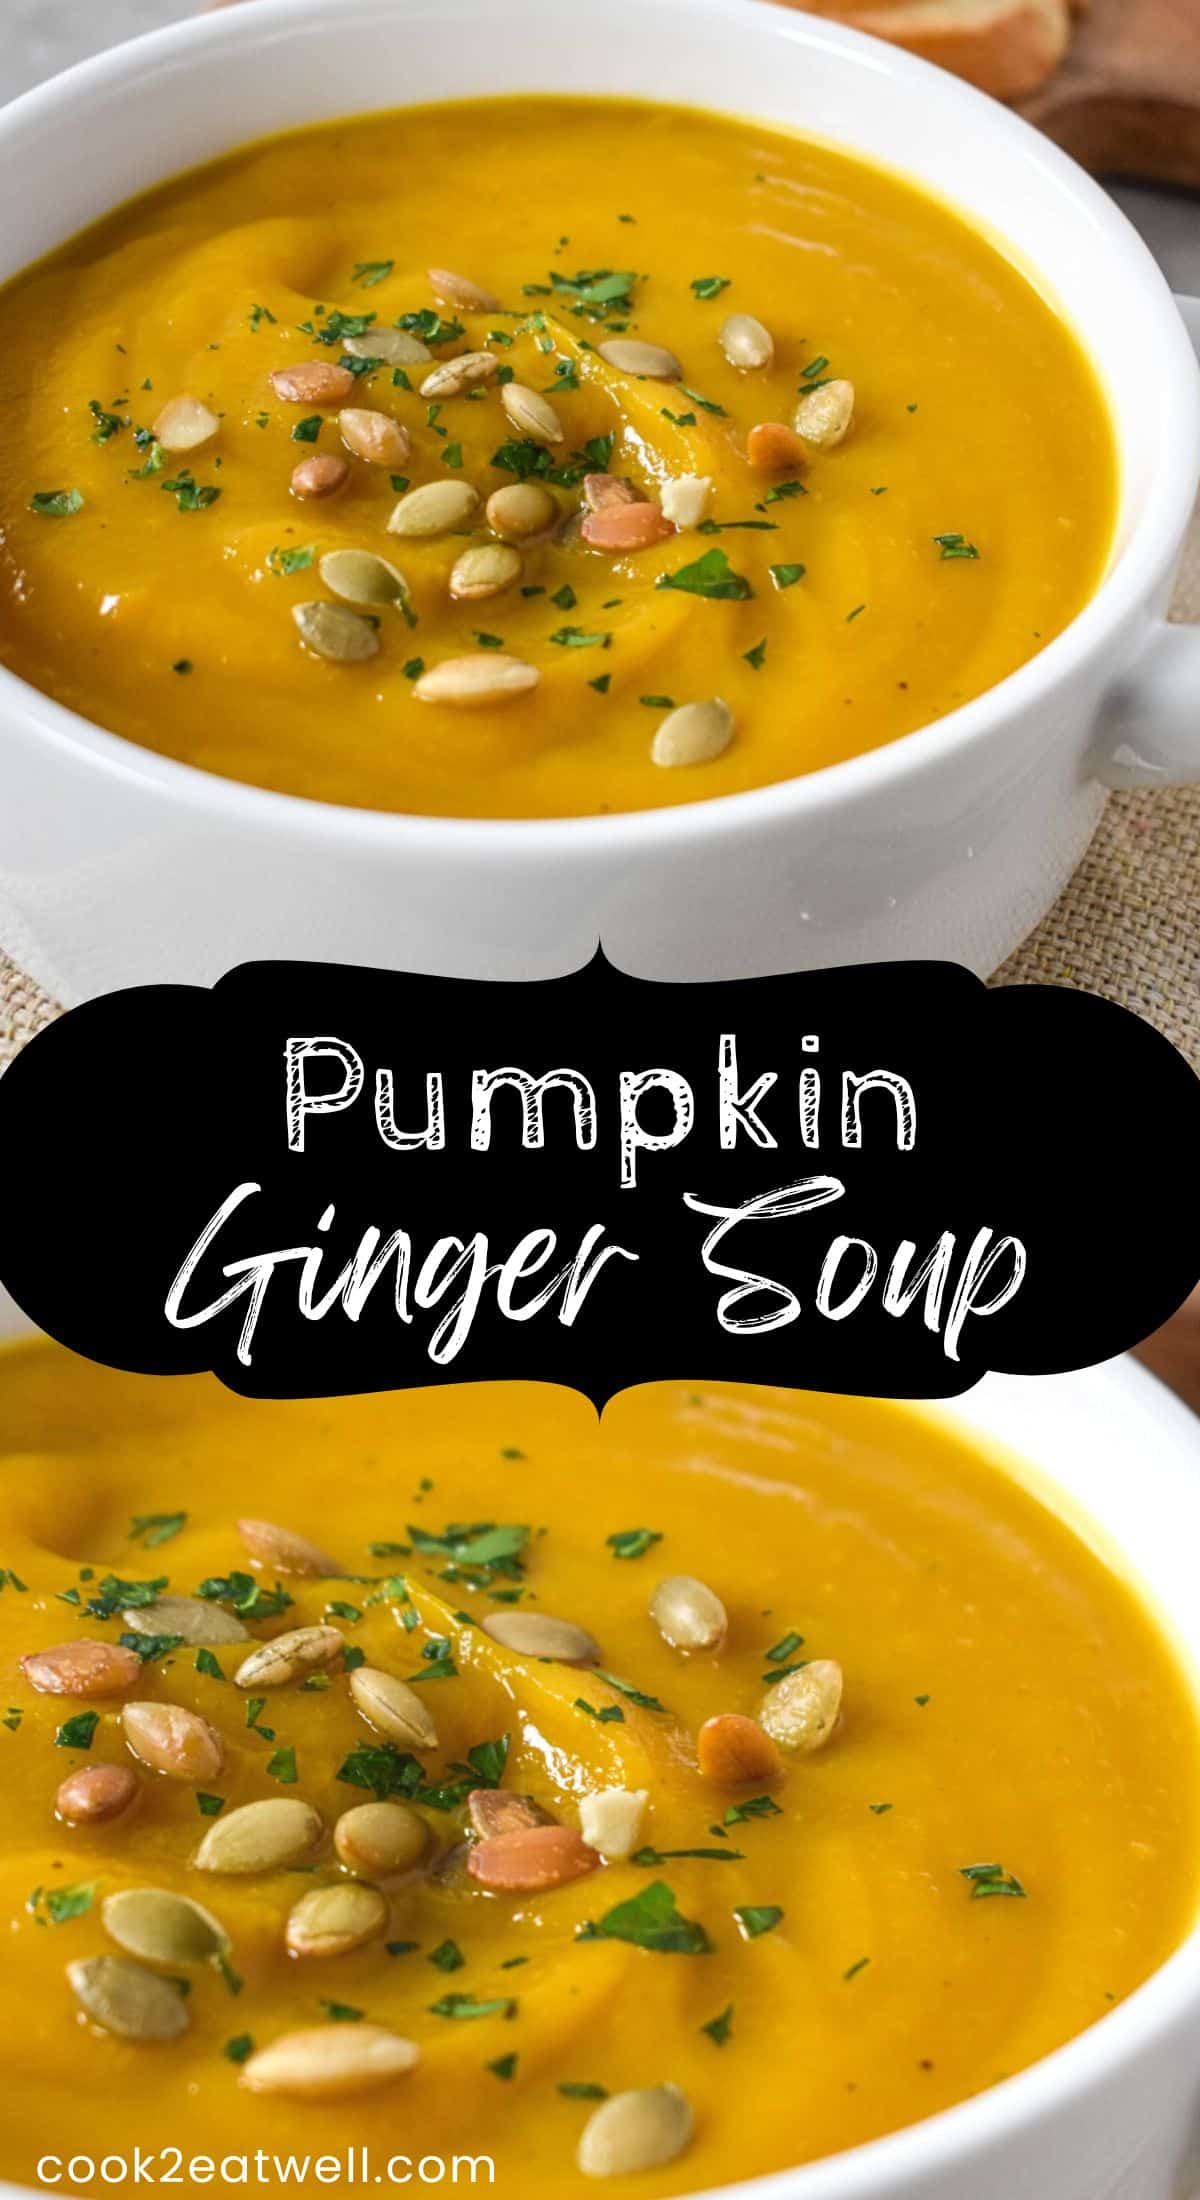 Pumpkin Ginger Soup - Cook2eatwell